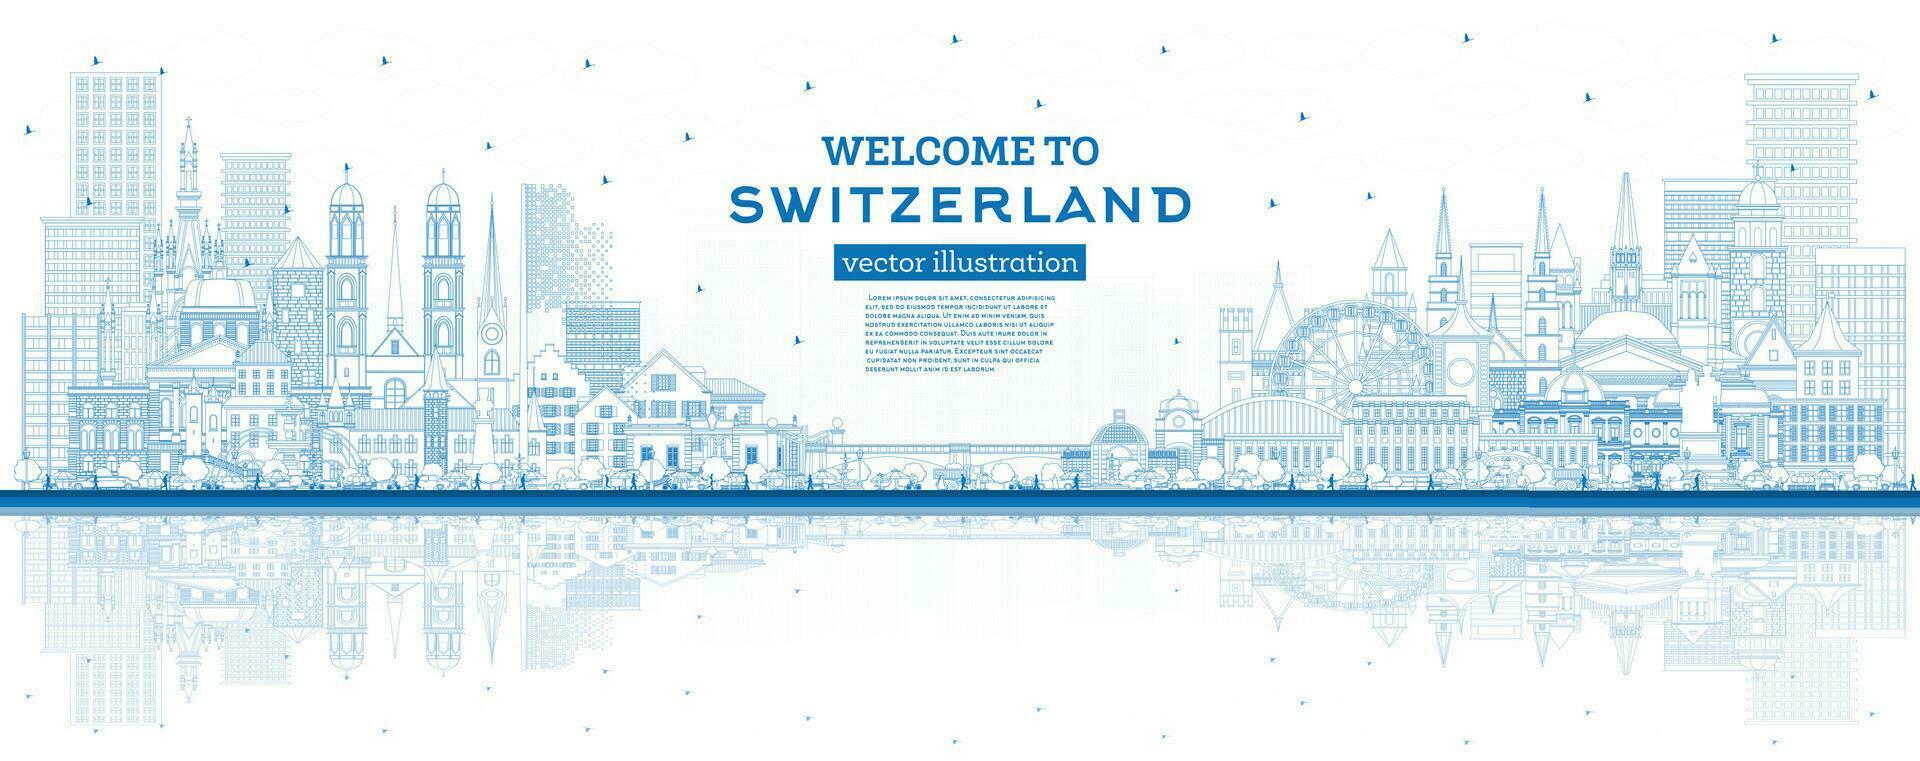 Welkom naar Zwitserland. schets stad horizon met blauw gebouwen. Zwitserland stadsgezicht met oriëntatiepunten. bern. Bazel. lugano. Zürich. Genève. vector